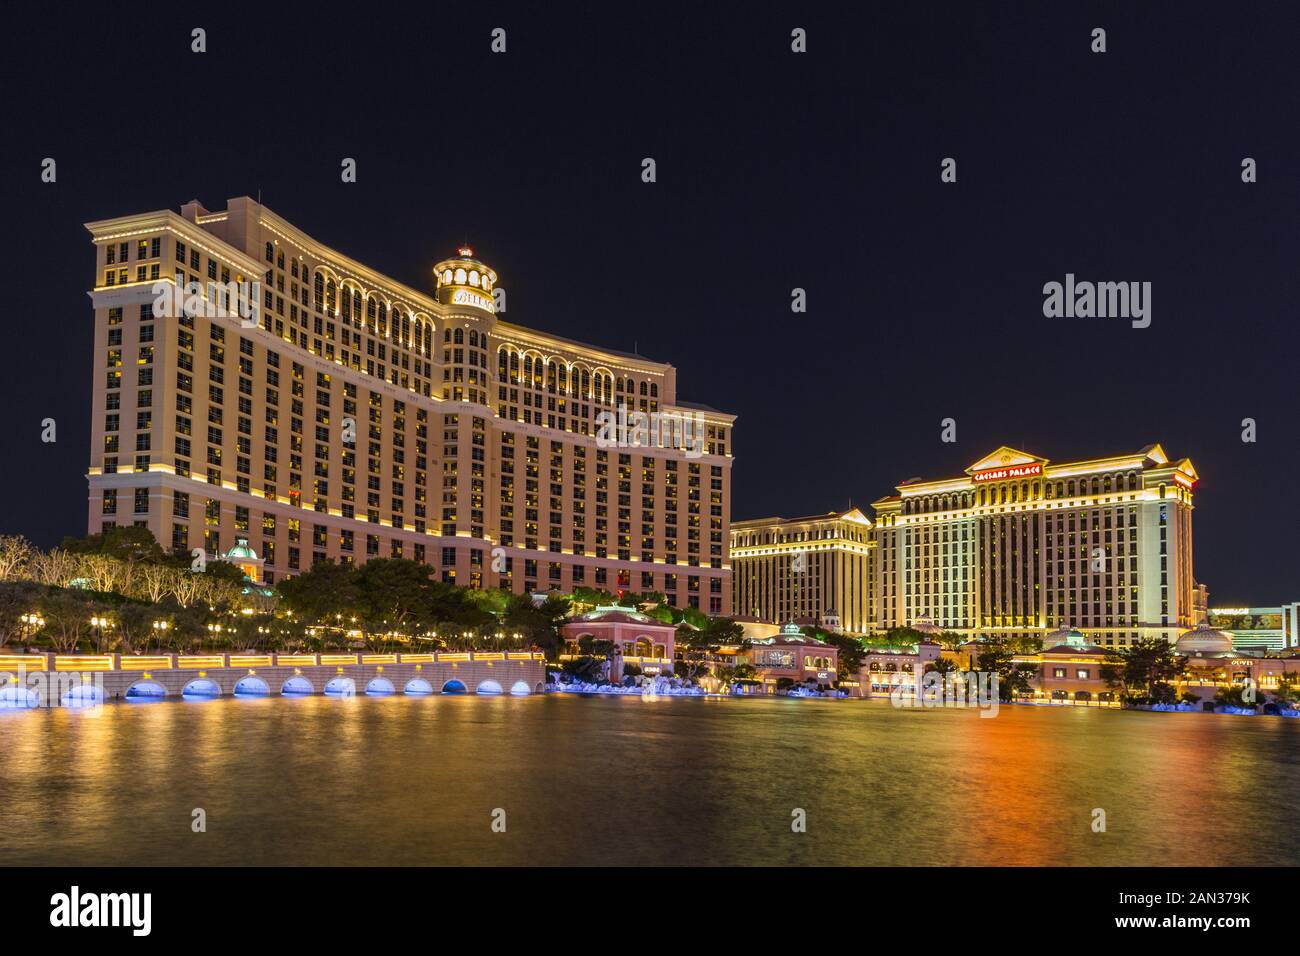 Las Vegas, Nevada, USA- 01 juin 2015 : avis de l'hôtel Bellagio et étang à Las Vegas Boulevard, un hôtel connu pour ses belles fontaines. Mauvaise nuit Banque D'Images